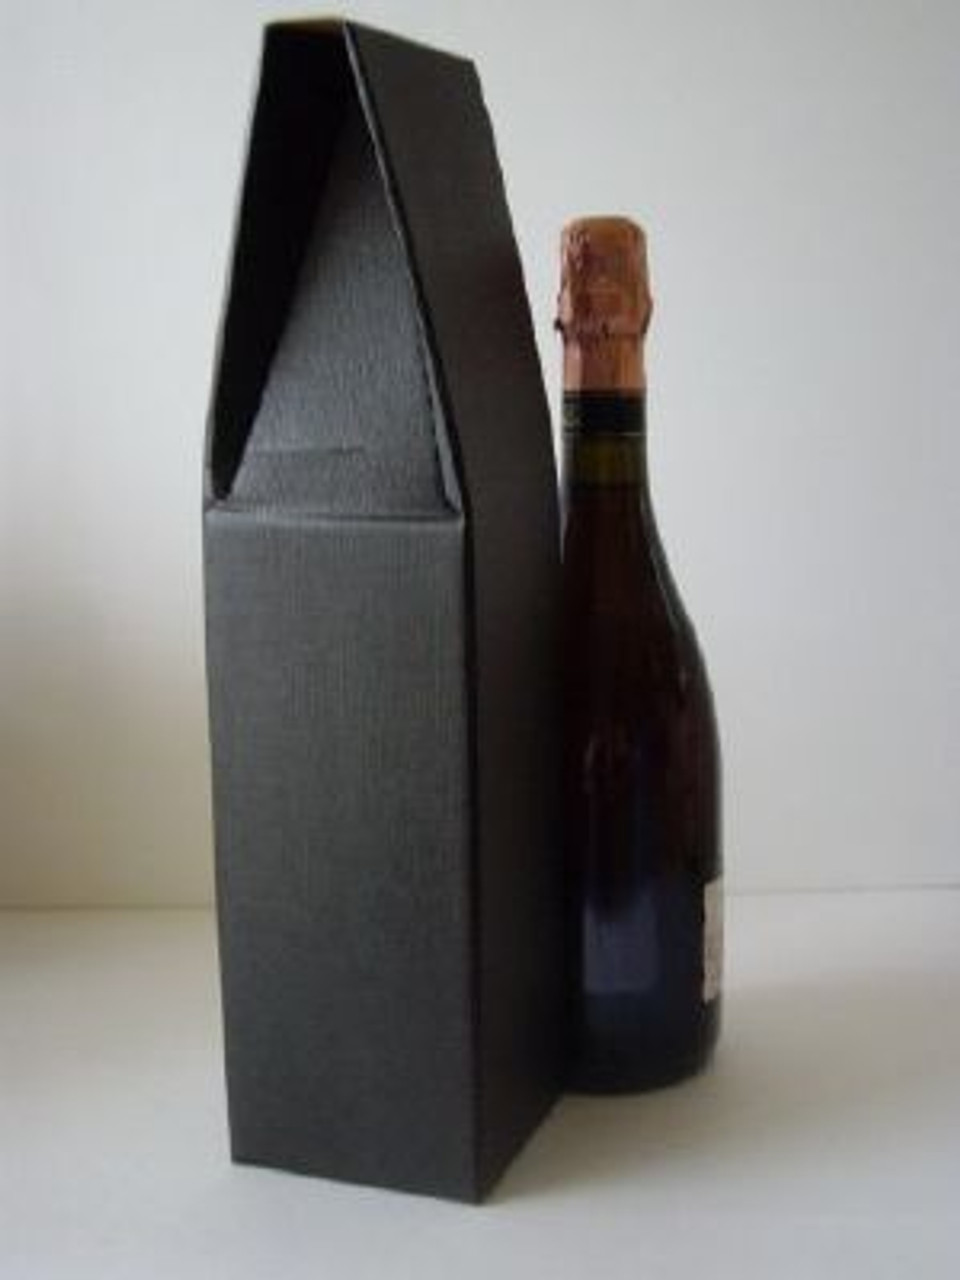 Coffret Cadeau Vin : 3 Bouteilles de Vin à Offrir - Achat / Vente